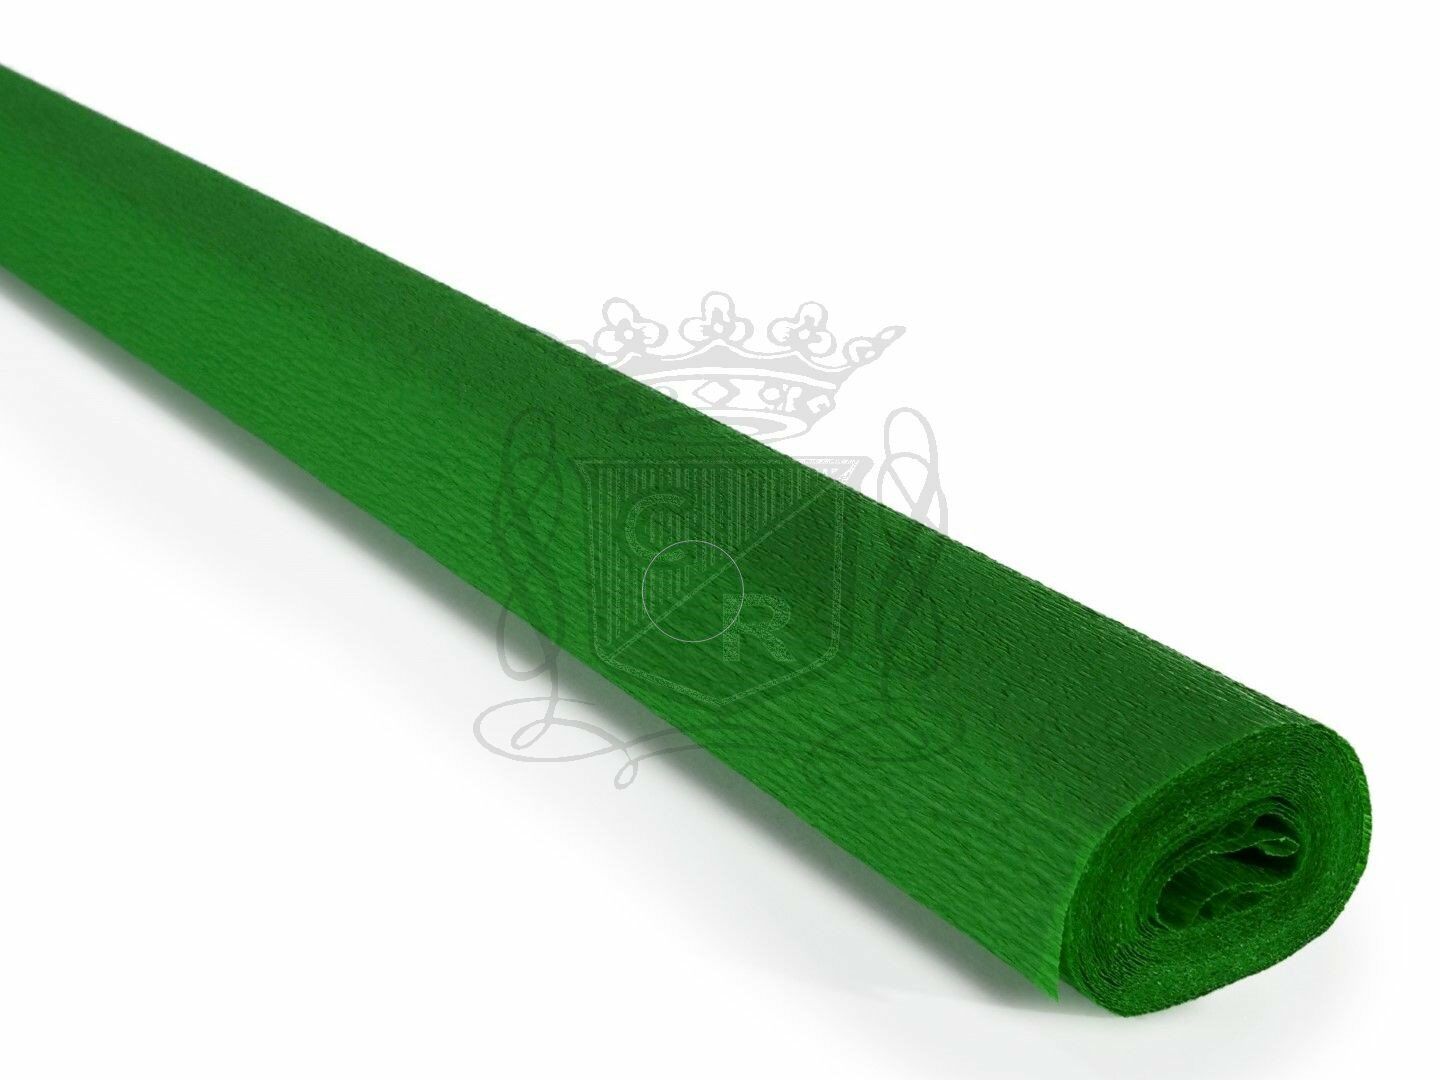 Italyan Krapon Kağıdı NO:236 - Çimen Yeşili - Grass Green 60 Gr. 50X250 cm